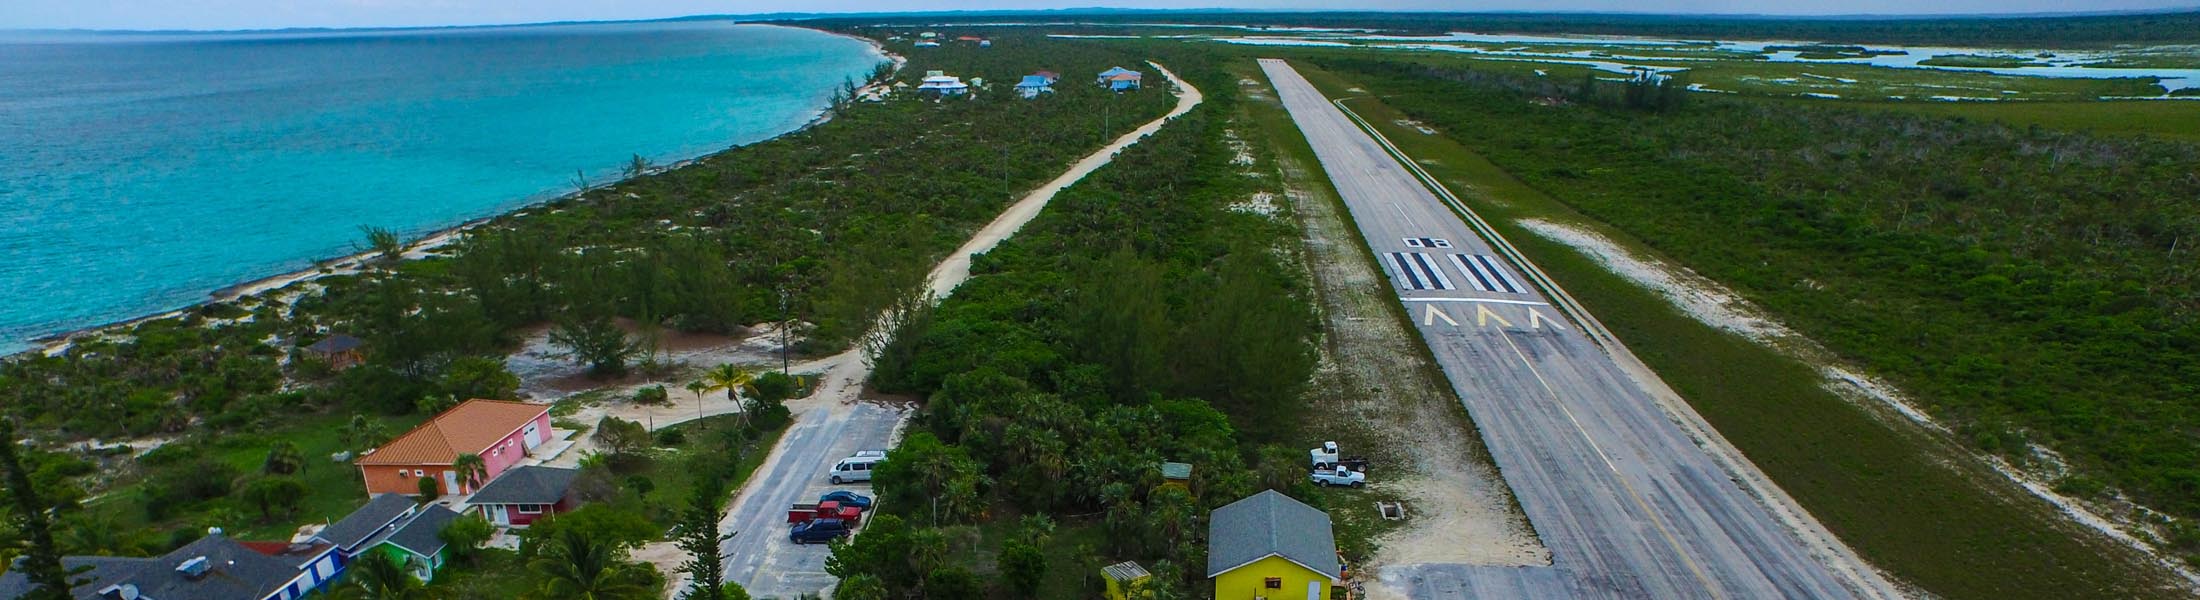 Cat Island, Bahamas | Hawk's Nest Resort & Marina